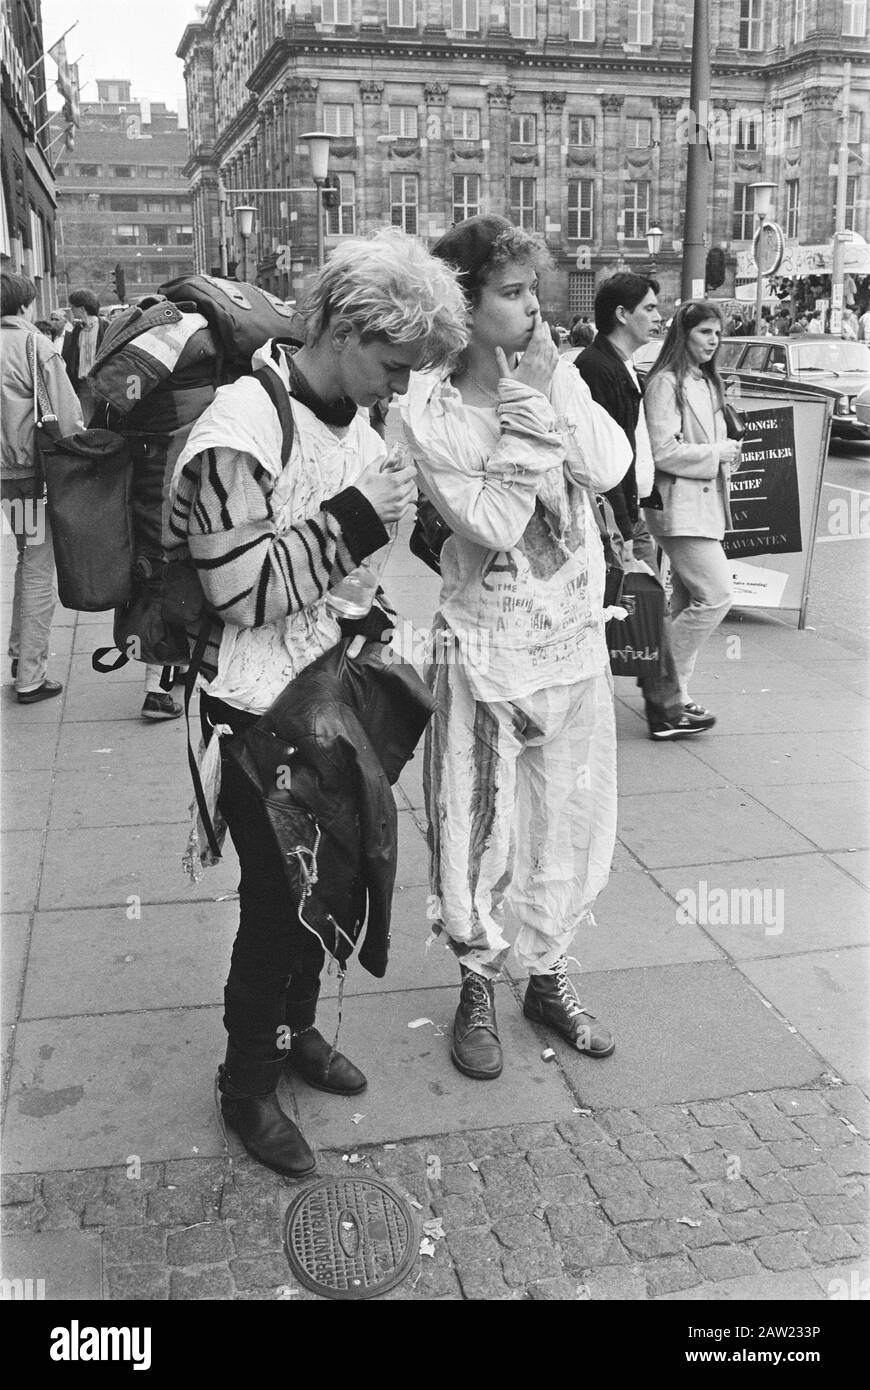 Ostern In Amsterdam; zwei junge britische Rucksacktouristen Datum: 20. April 1984 Ort: Amsterdam, Noord-Holland Schlüsselwörter: Touristen Stockfoto